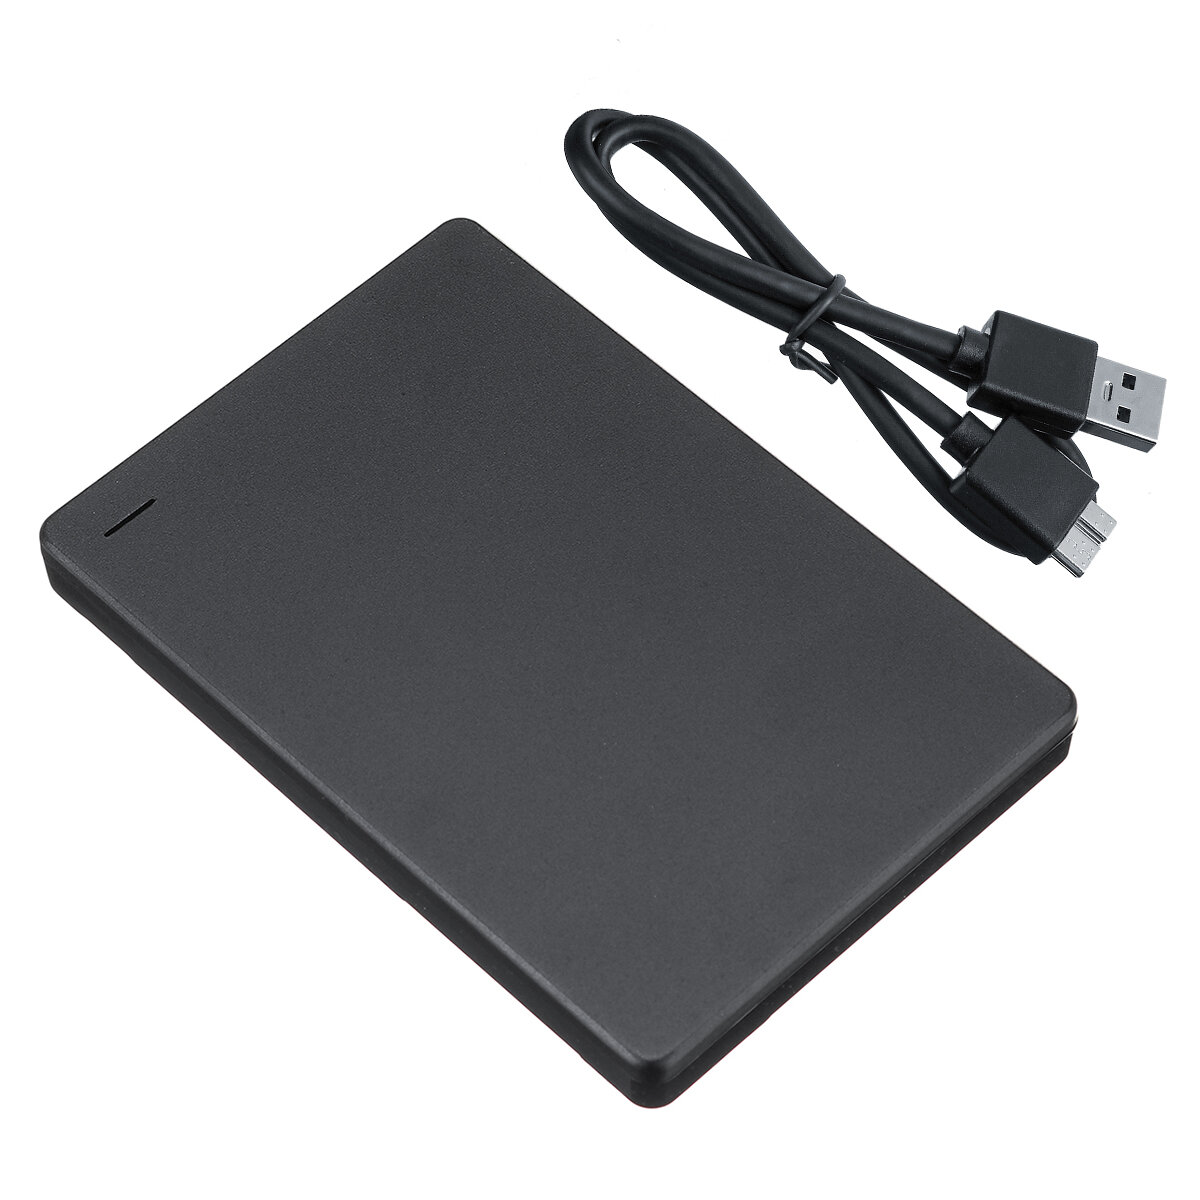 USB3.0外付けハードドライブエンクロージャアルミニウム合金2.5インチSATA SSD HDDエンクロージャケースハードディスクドックブラック